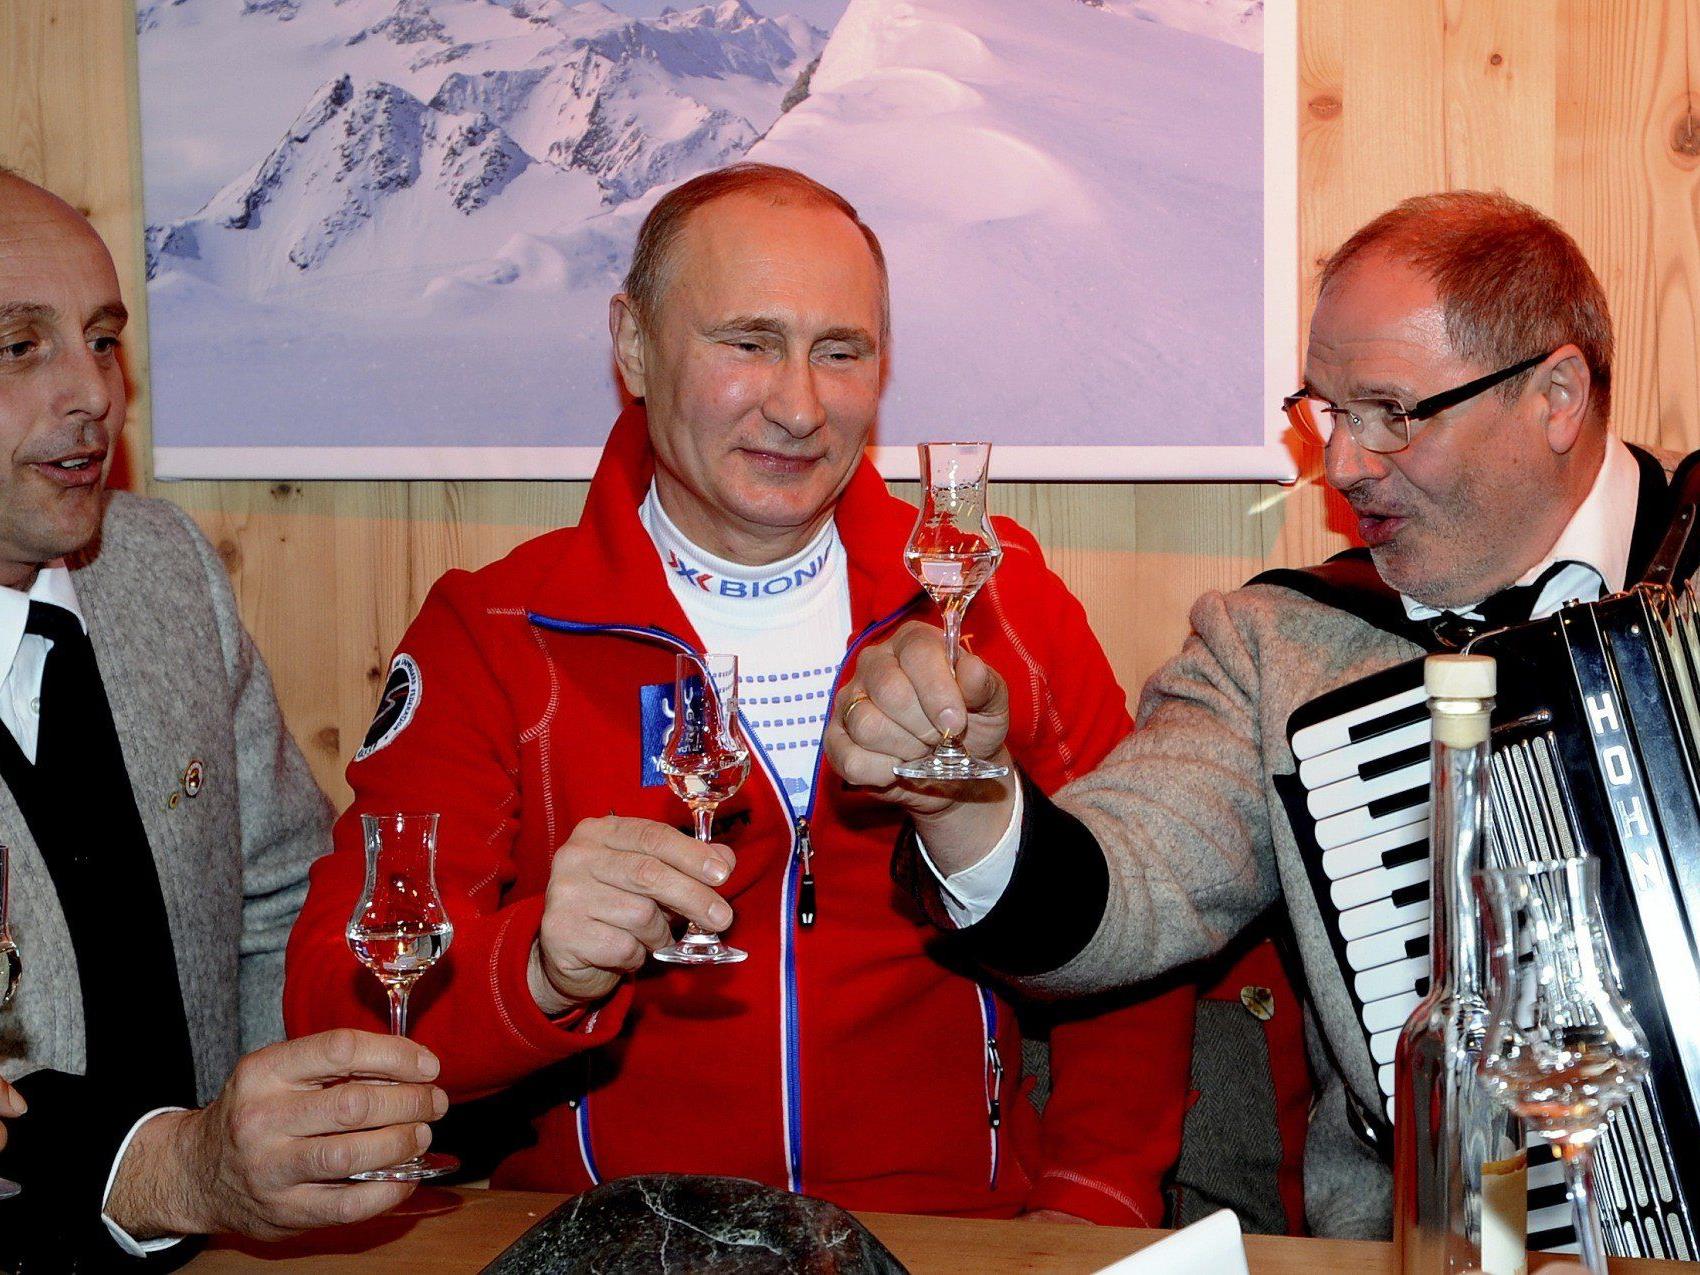 Putin zu Gast im "Austria Tirol Haus".